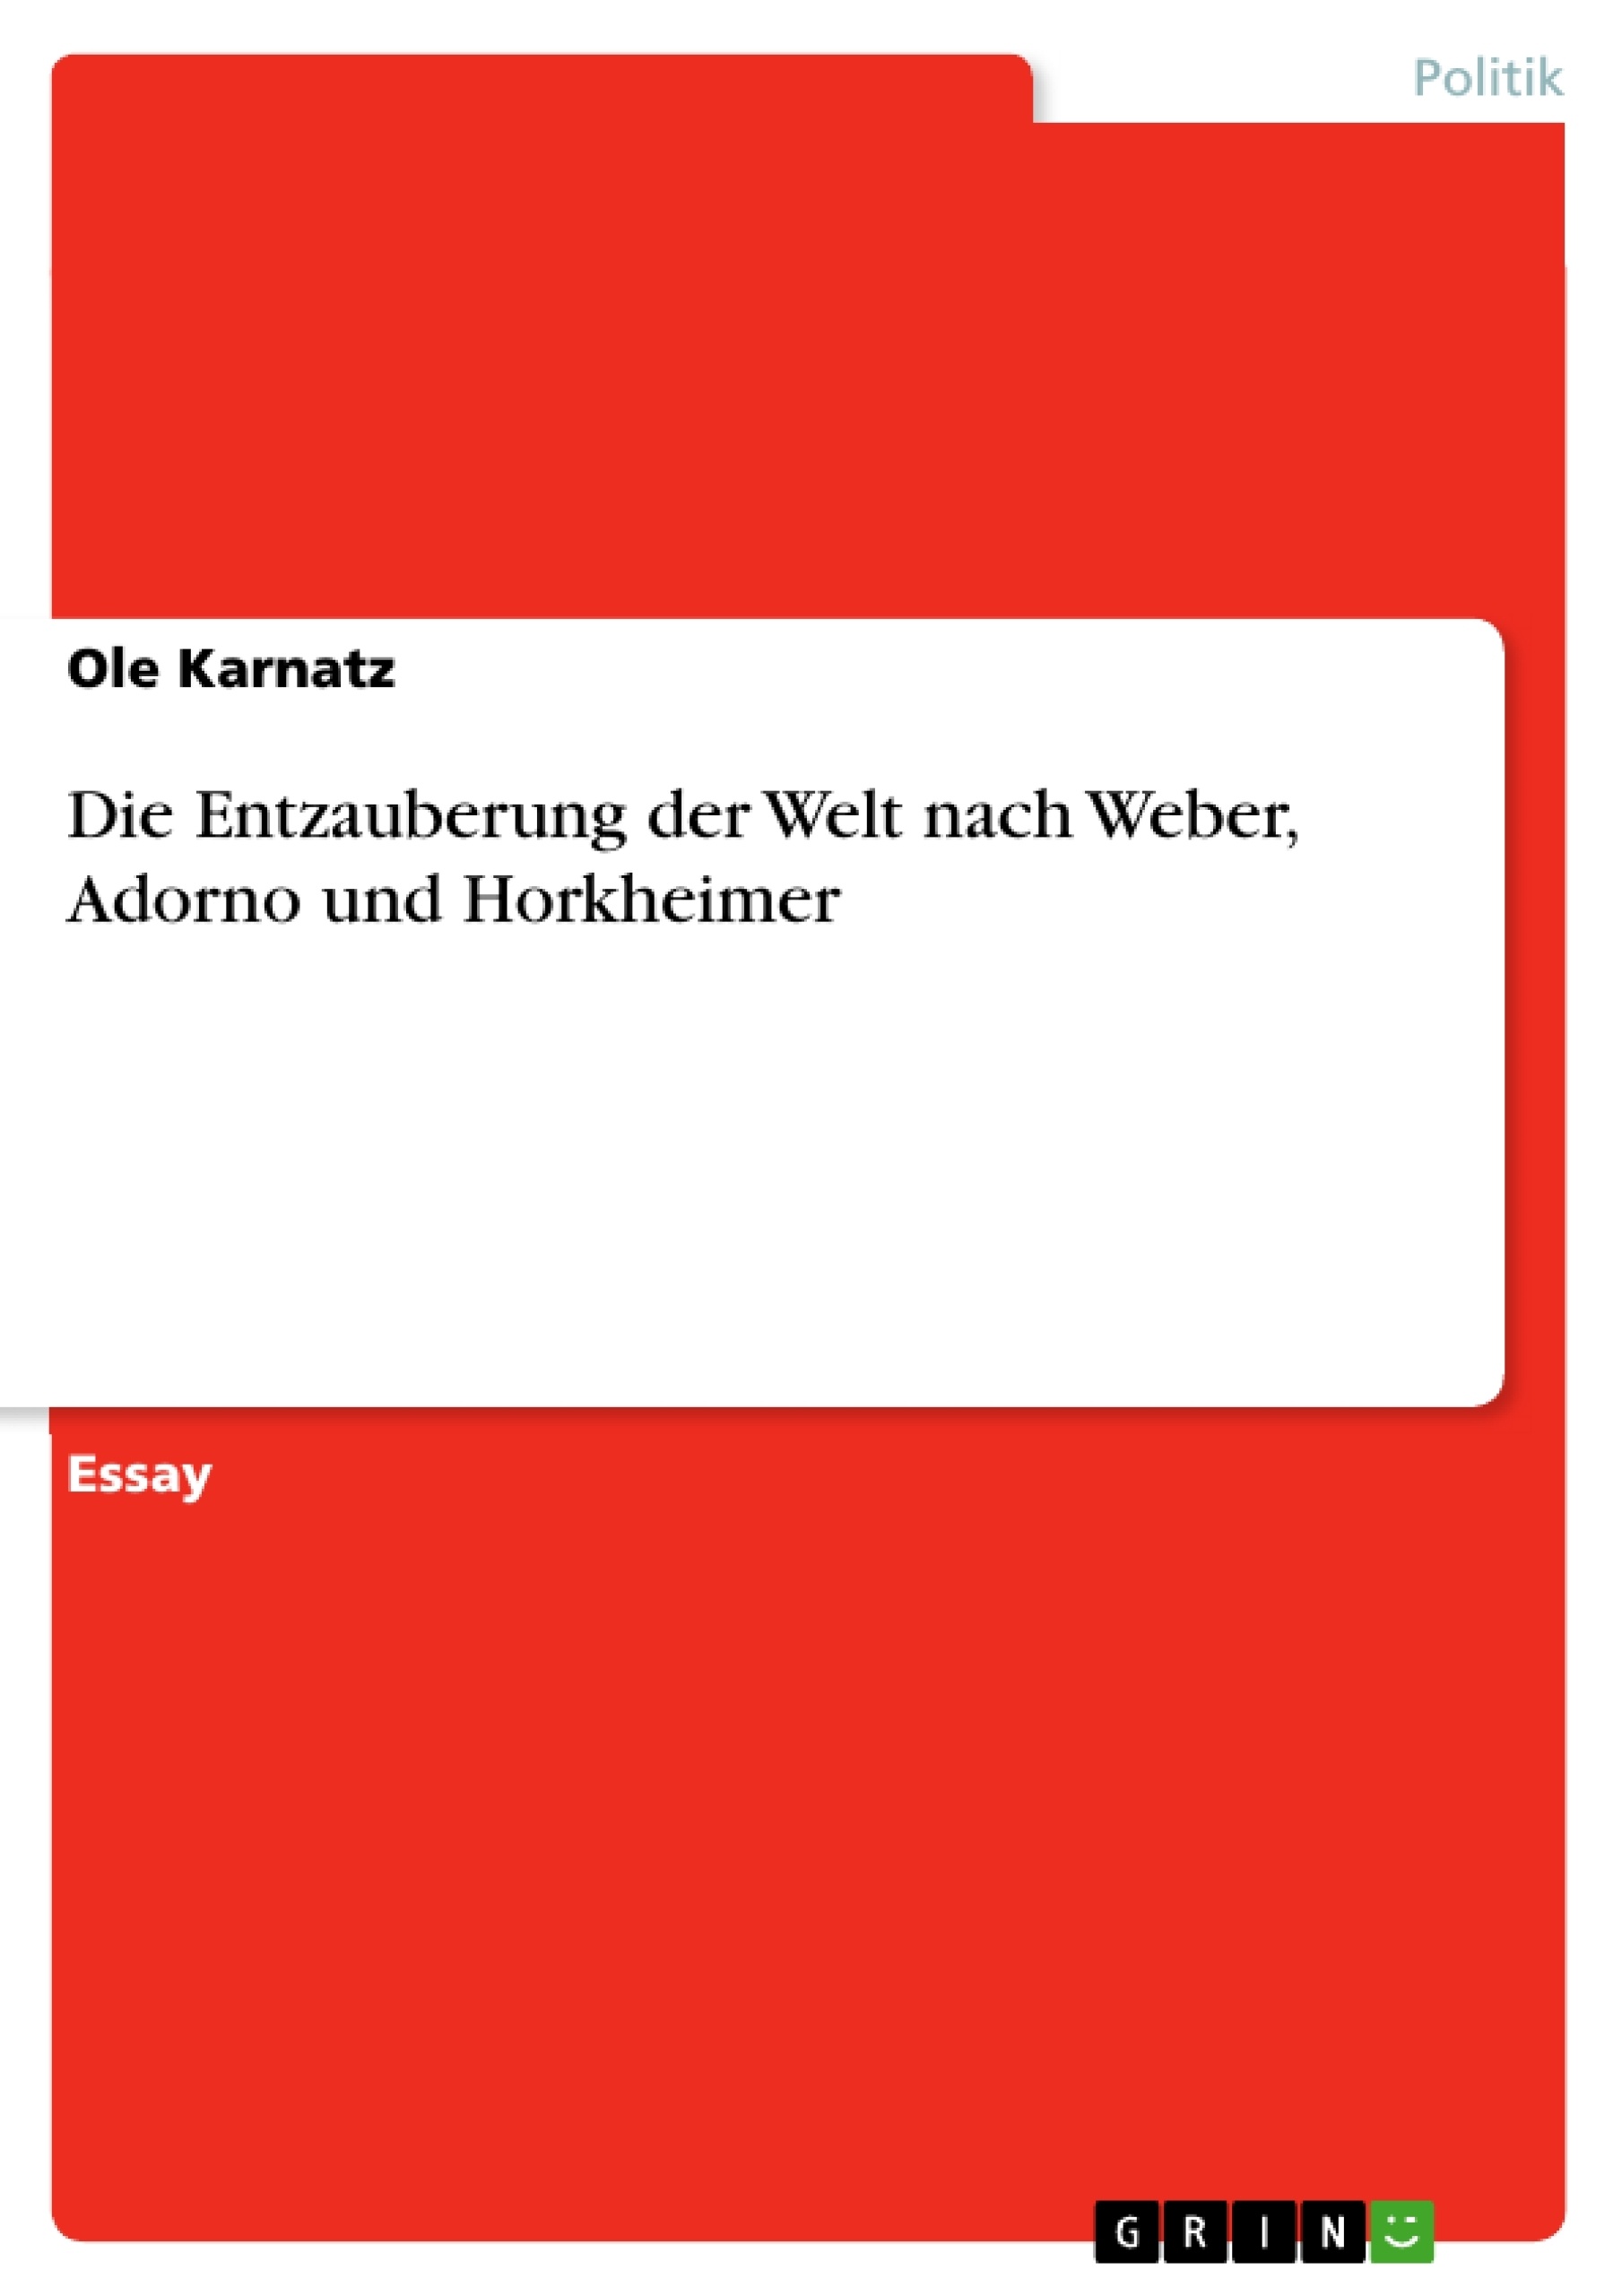 Titre: Die Entzauberung der Welt nach Weber, Adorno und Horkheimer